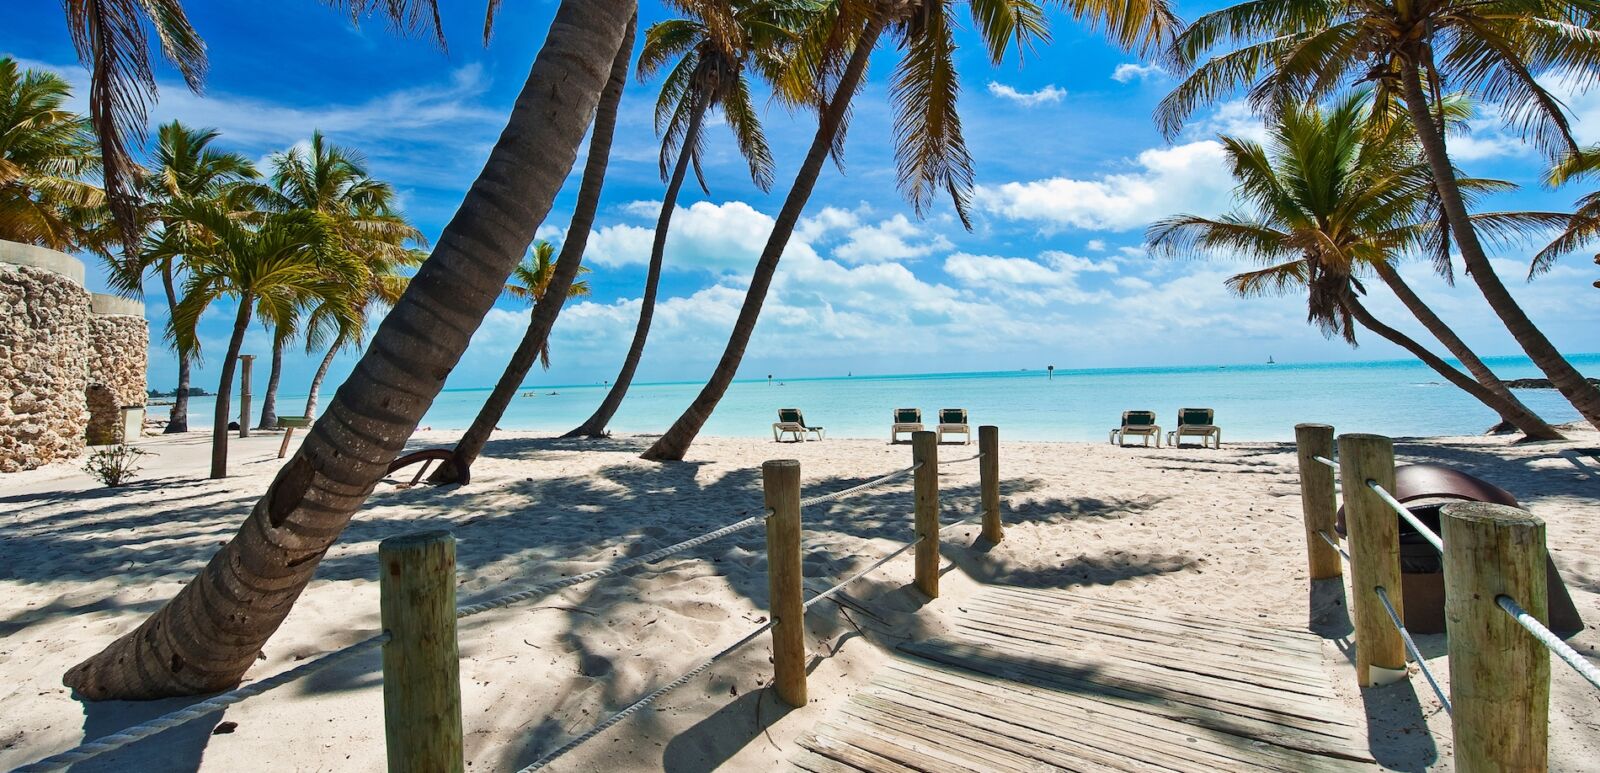 Key West. Photo via Shutterstock.